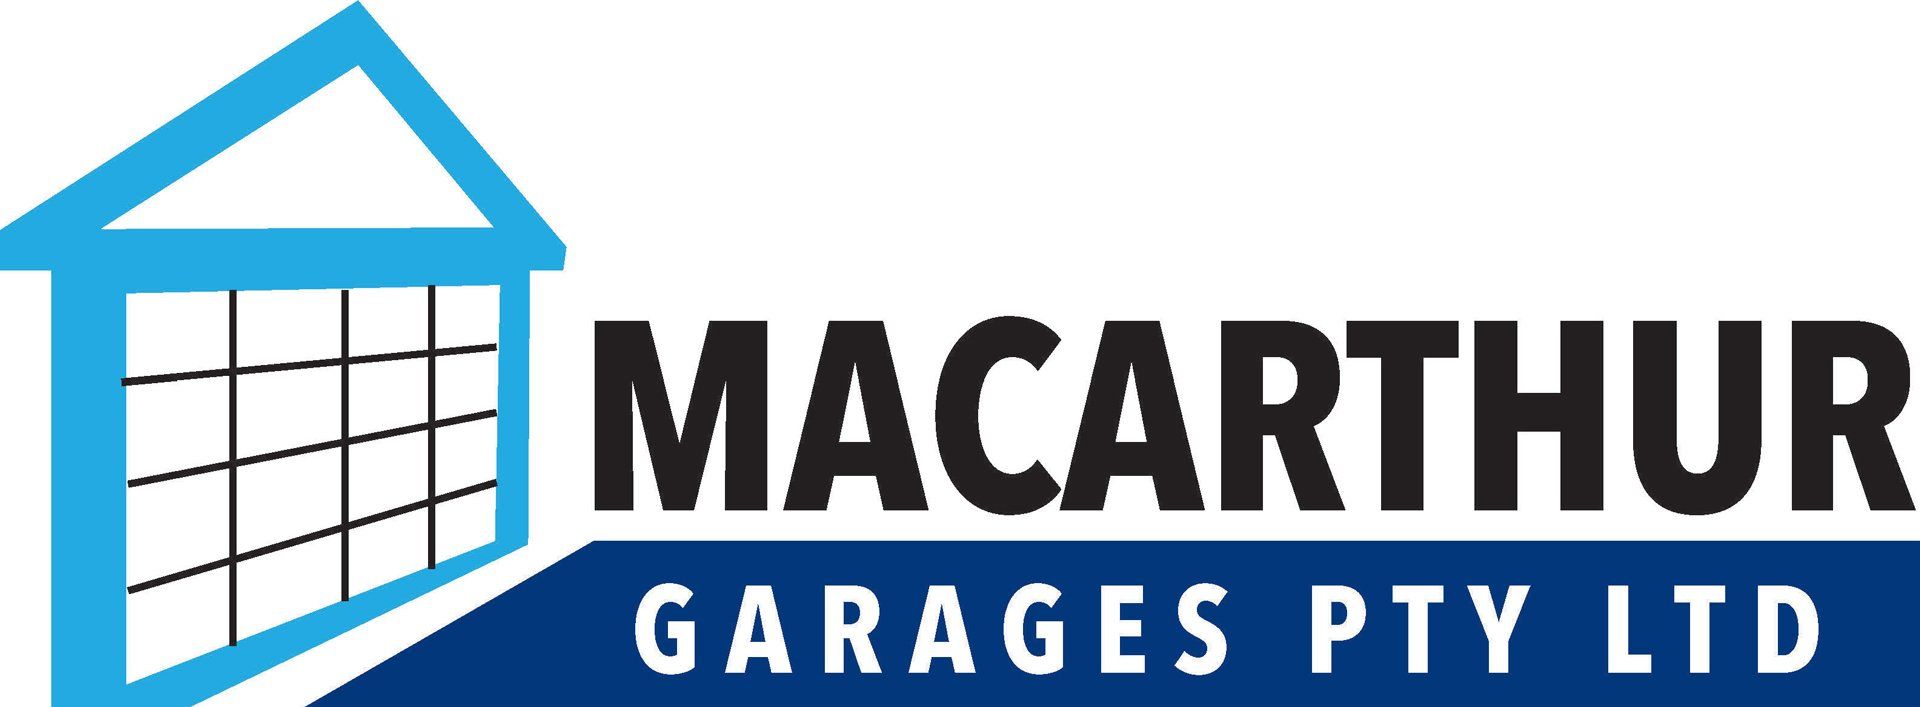 Macarthur Garages Logo